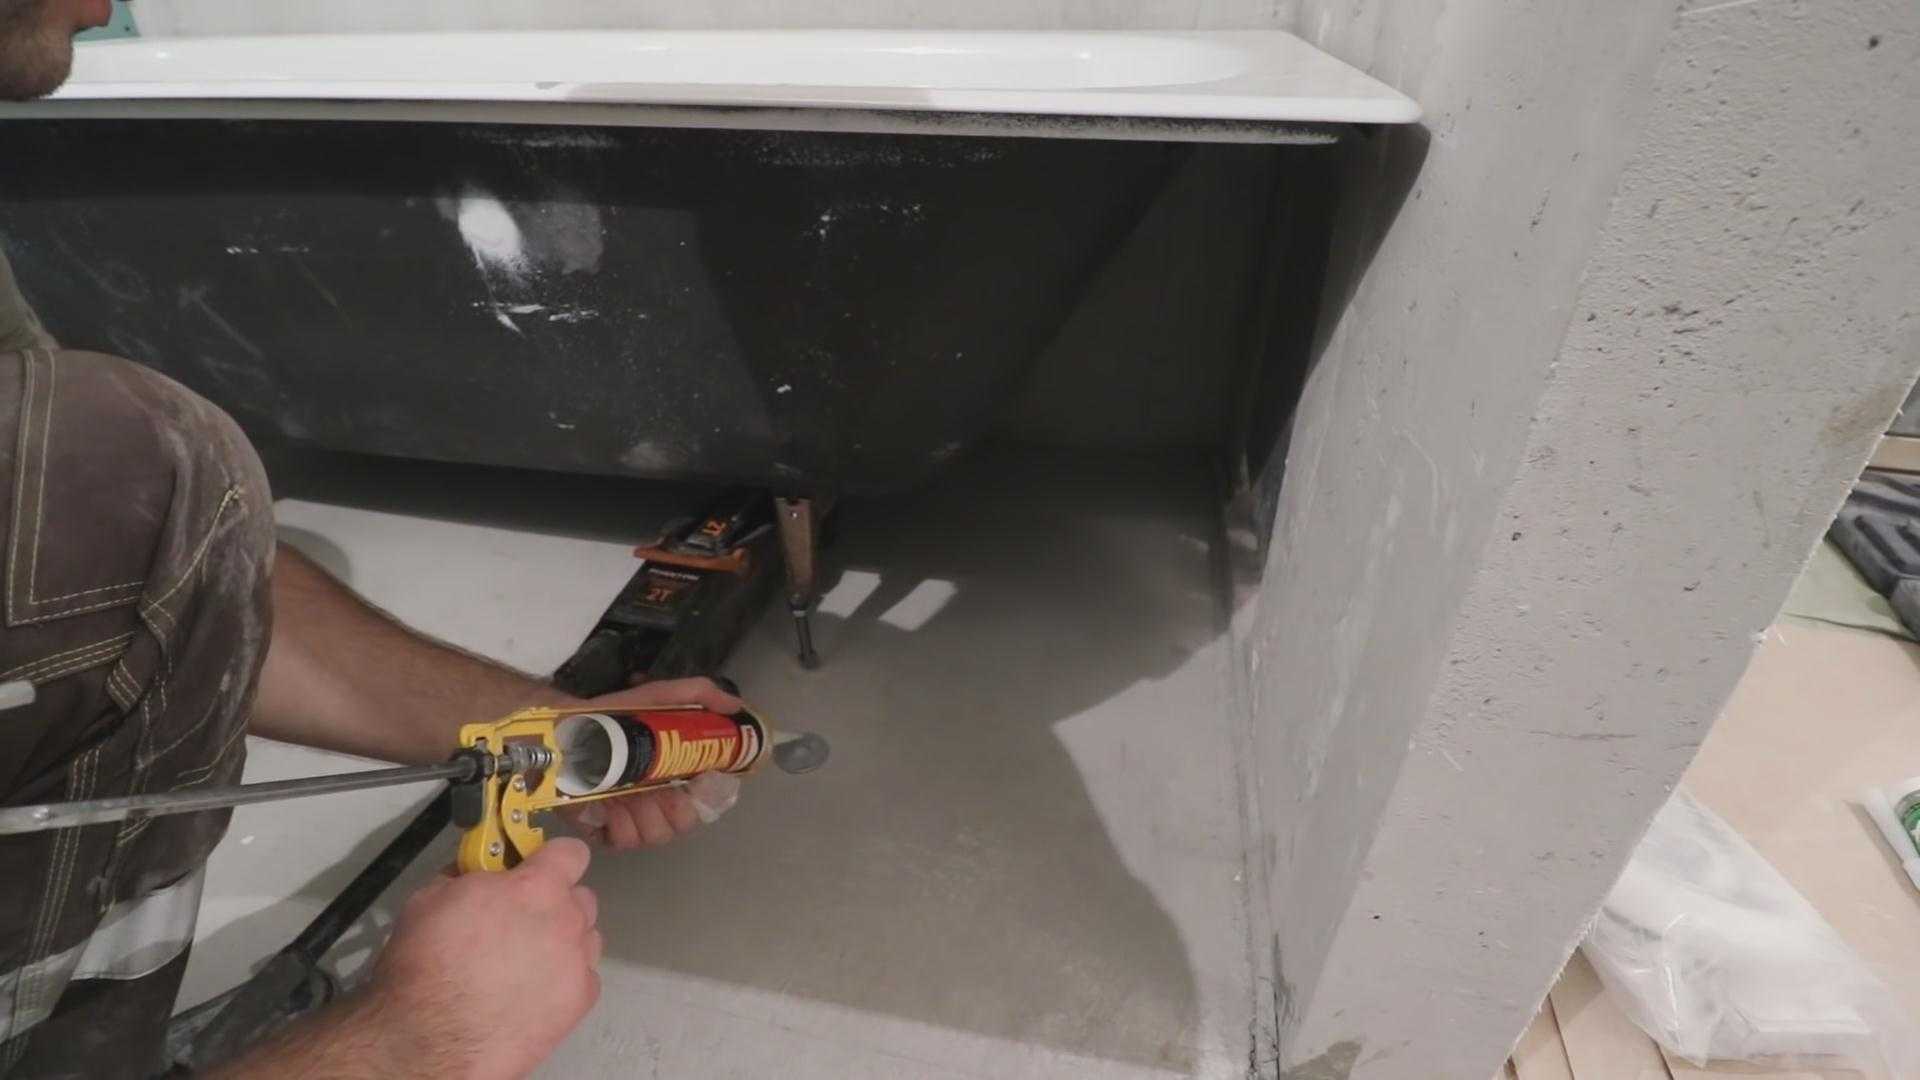 Установка ванны в ванной комнате (75 фото): как установить своими руками, демонтаж стального изделия